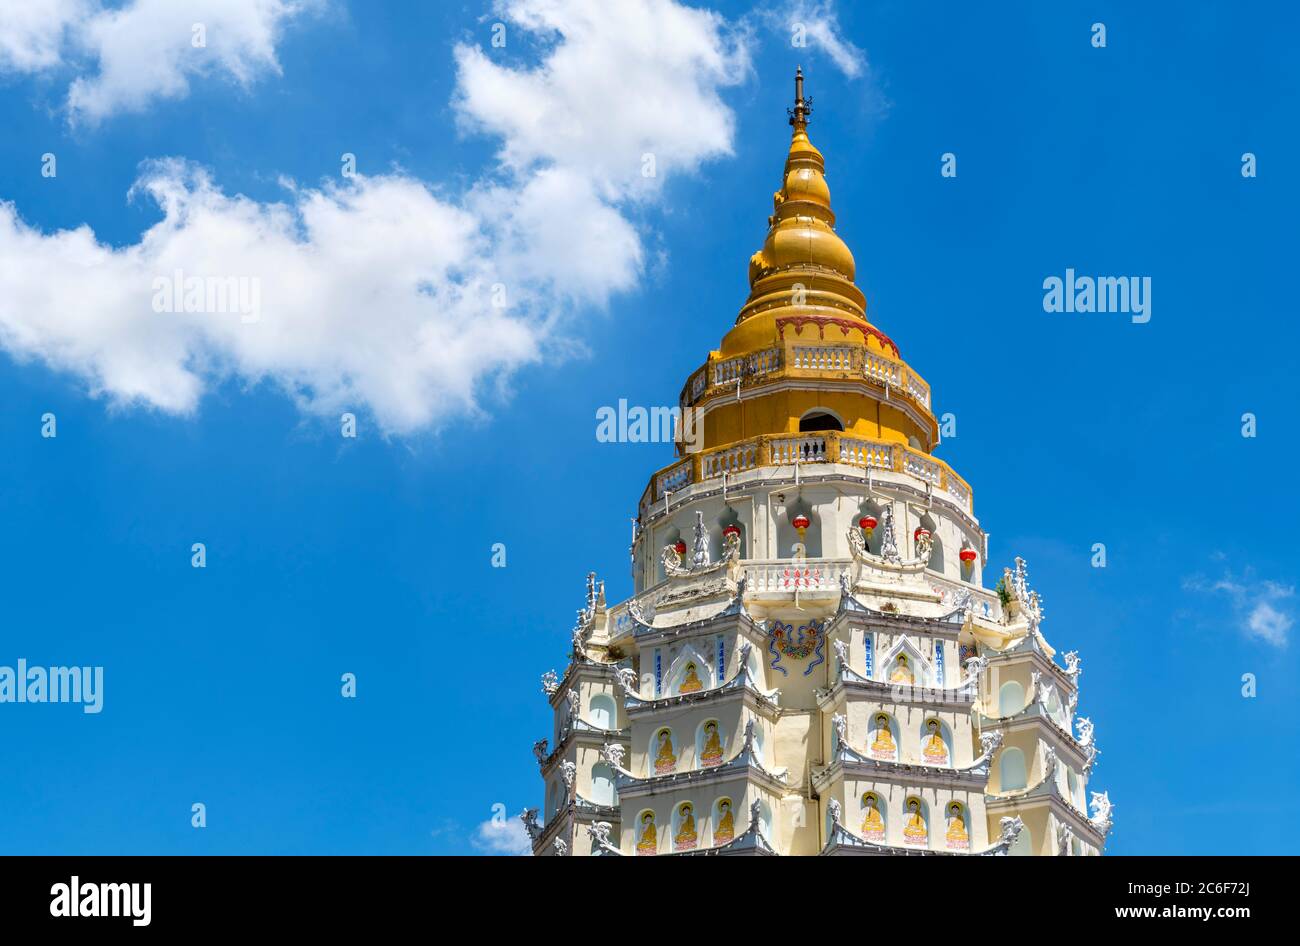 Spitze der Zehntausend Buddhas Pagode am Kek Lok Si Tempel, einem buddhistischen Tempel in Air ITAM, Penang, Malaysia Stockfoto